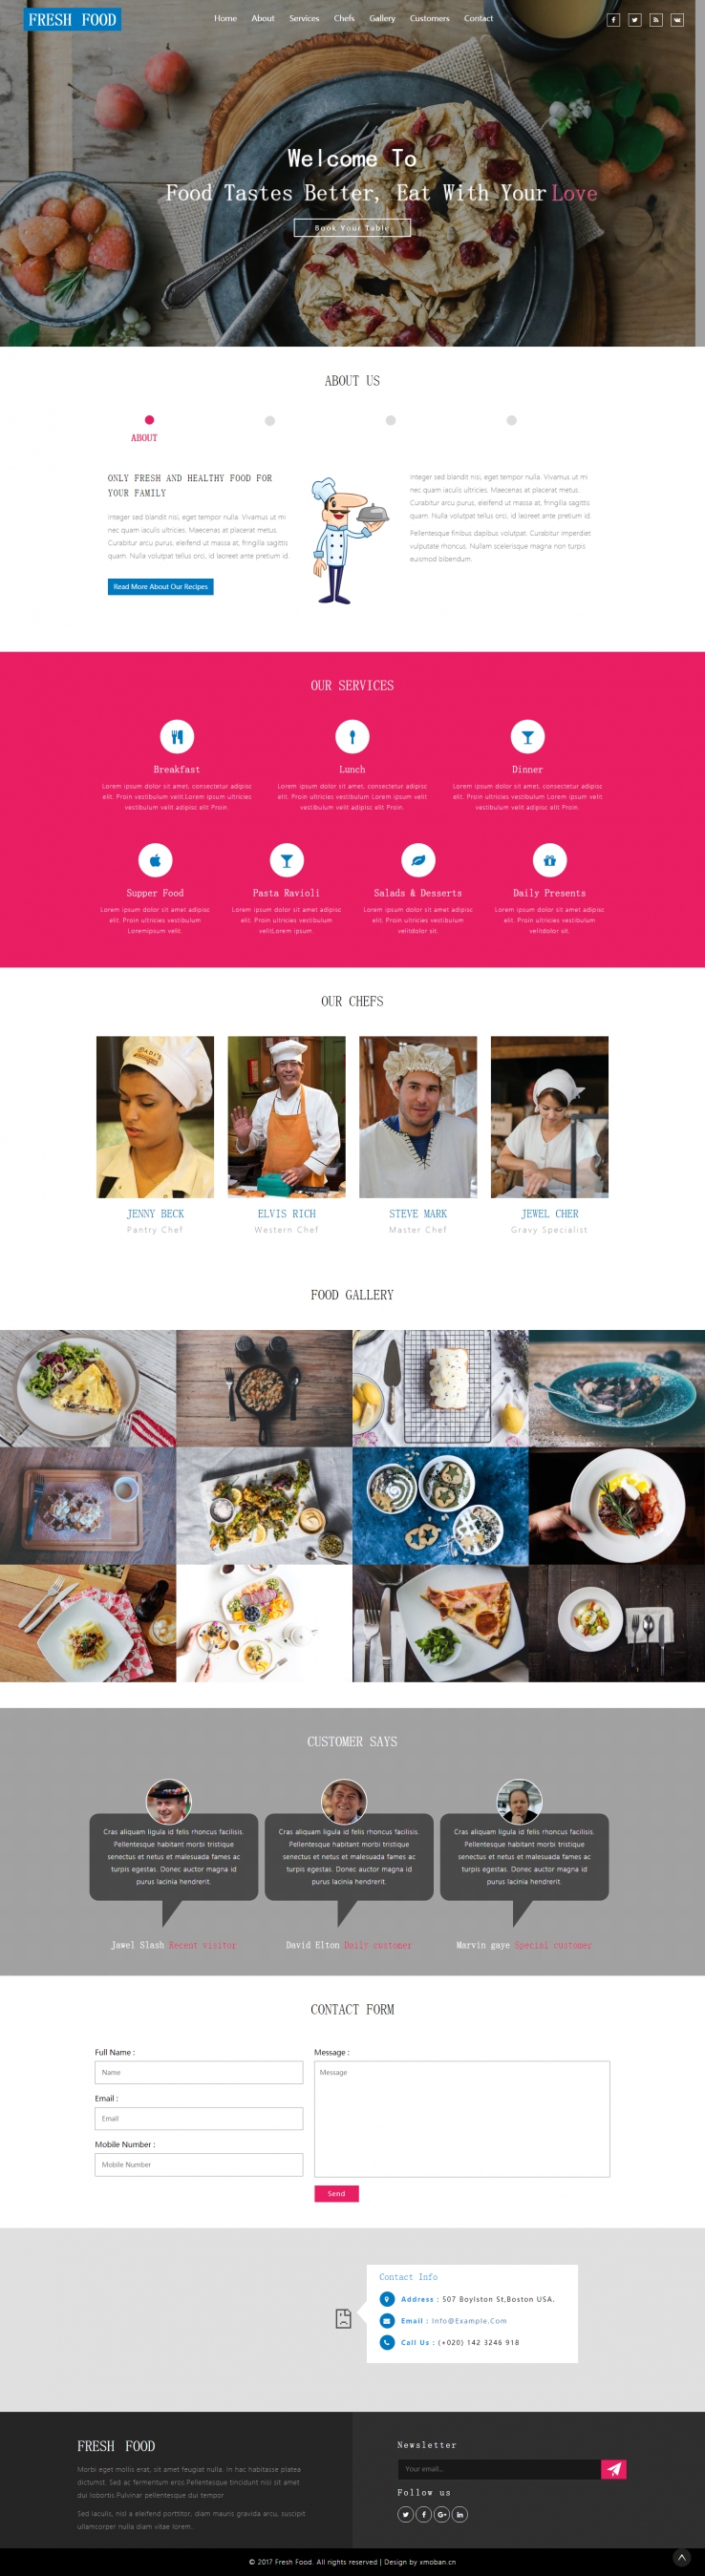 白色欧美风格的生鲜食品企业网站源码下载